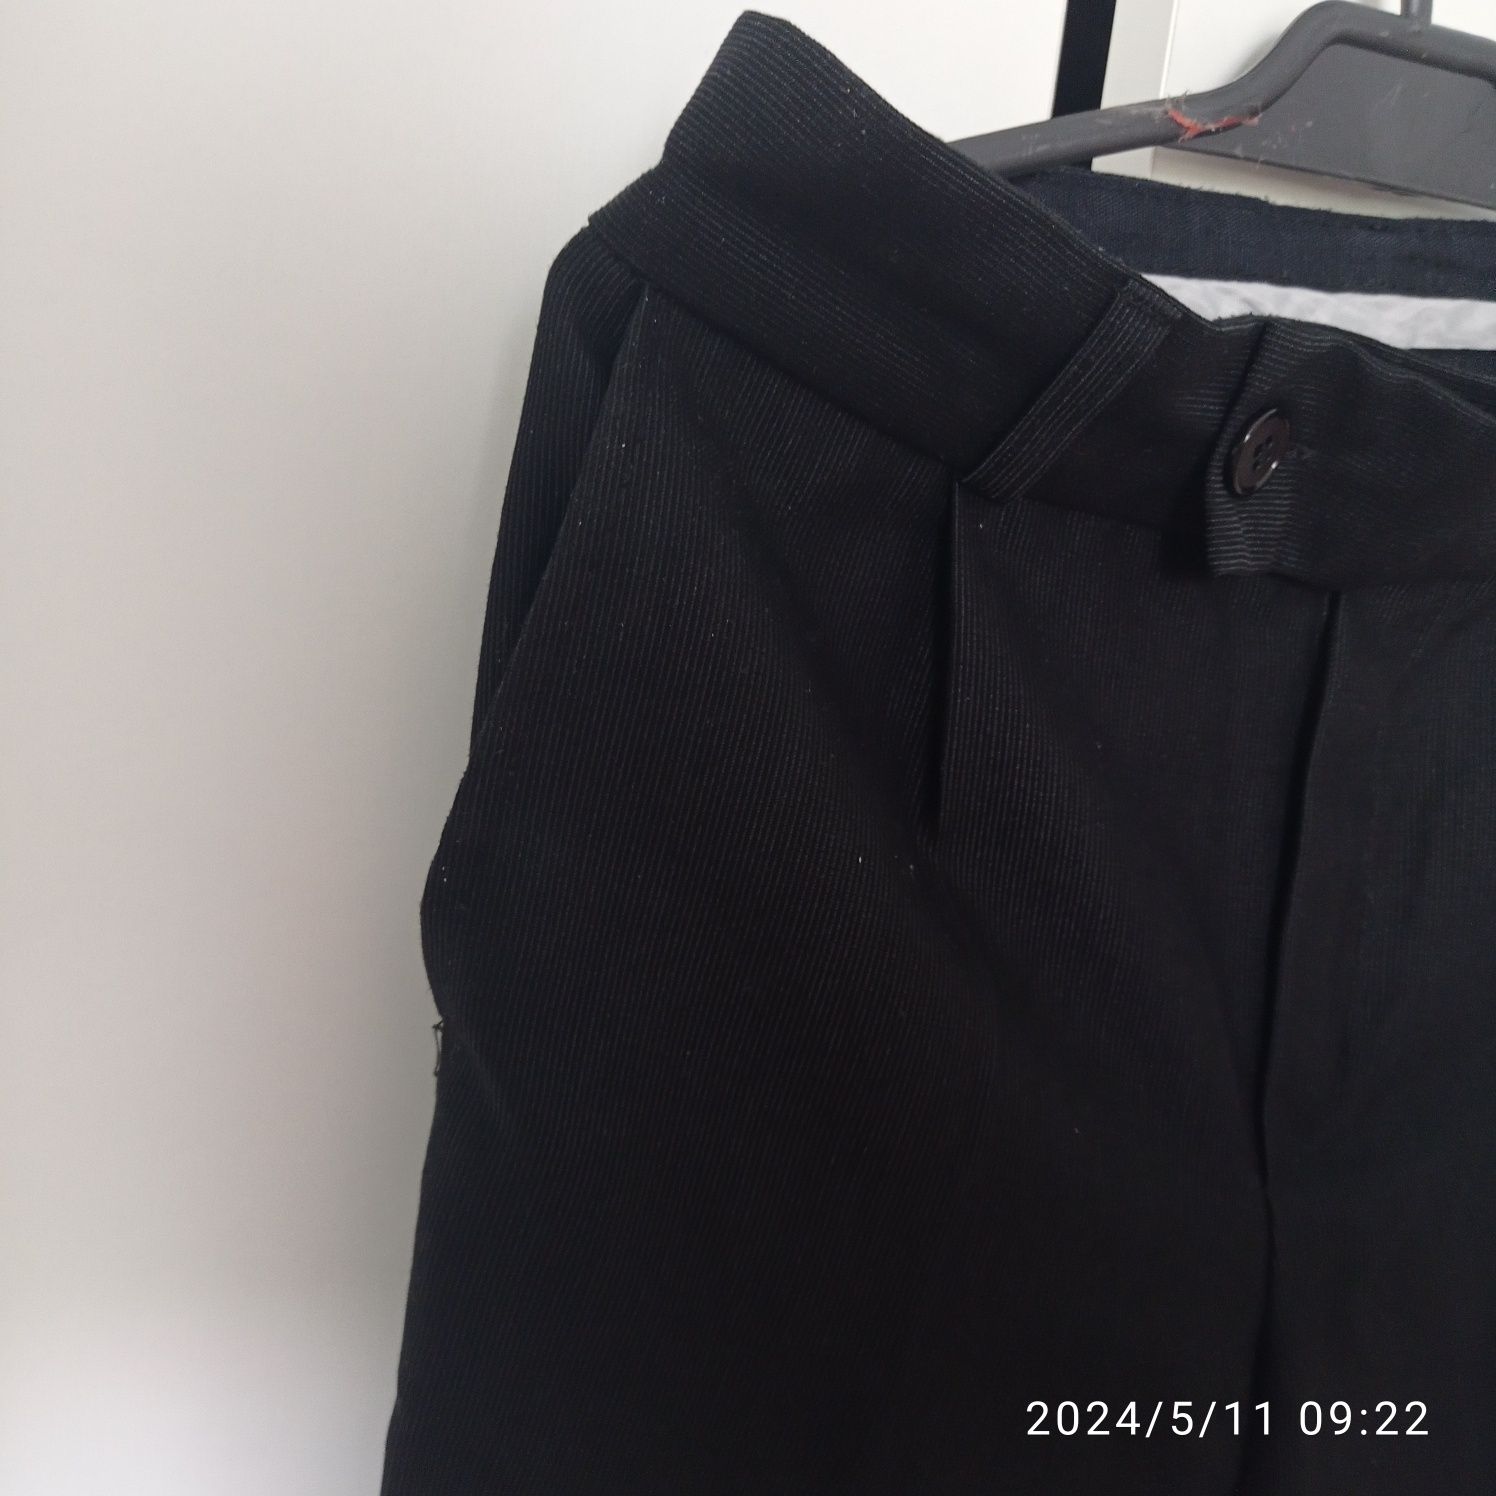 Spodnie chłopięce galowe wizytowe eleganckie czarne 128cm